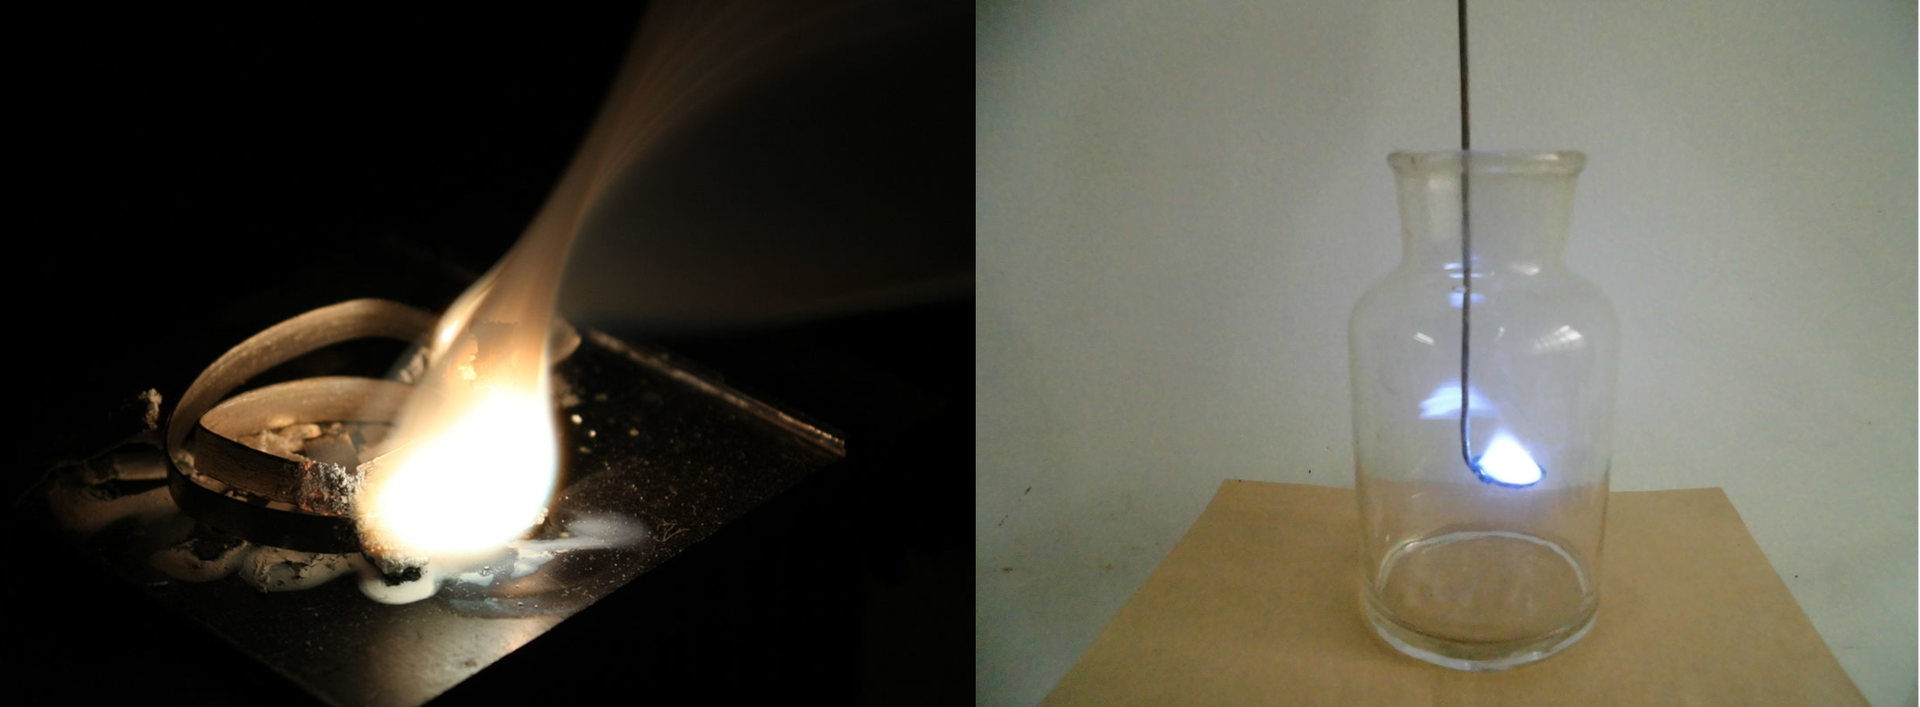 Grafika składa się z dwóch zdjęć. Po lewej stronie znajduje się zdjęcie przedstawiające spalanie wstążki magnezowej na powietrzu, która spala się oślepiającym białym płomieniem. Po prawej stronie znajduje się zdjęcie przedstawiające spalanie siarki w kolbie stożkowej. W wysokiej szklanej przezroczystej kolbie umieszczona jest ciemna metalowa łyżeczka, na której znajduje się niebieski okrągły płomień.